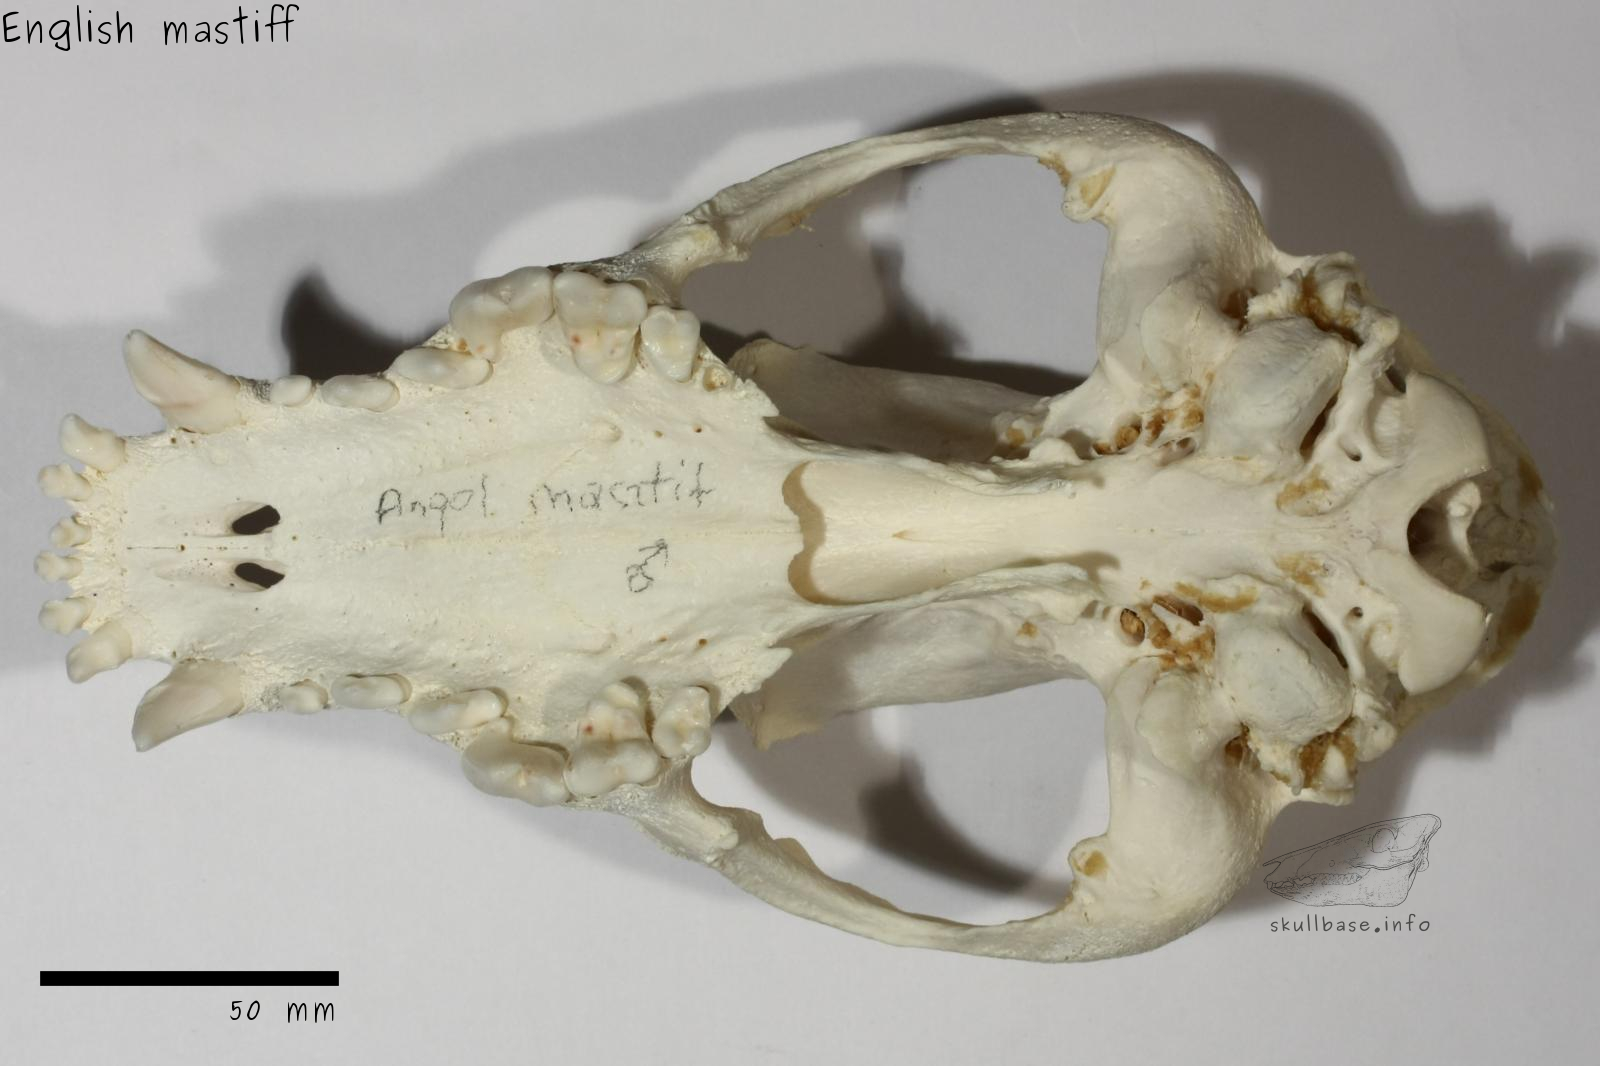 English mastiff (Canis lupus familiaris) skull ventral view